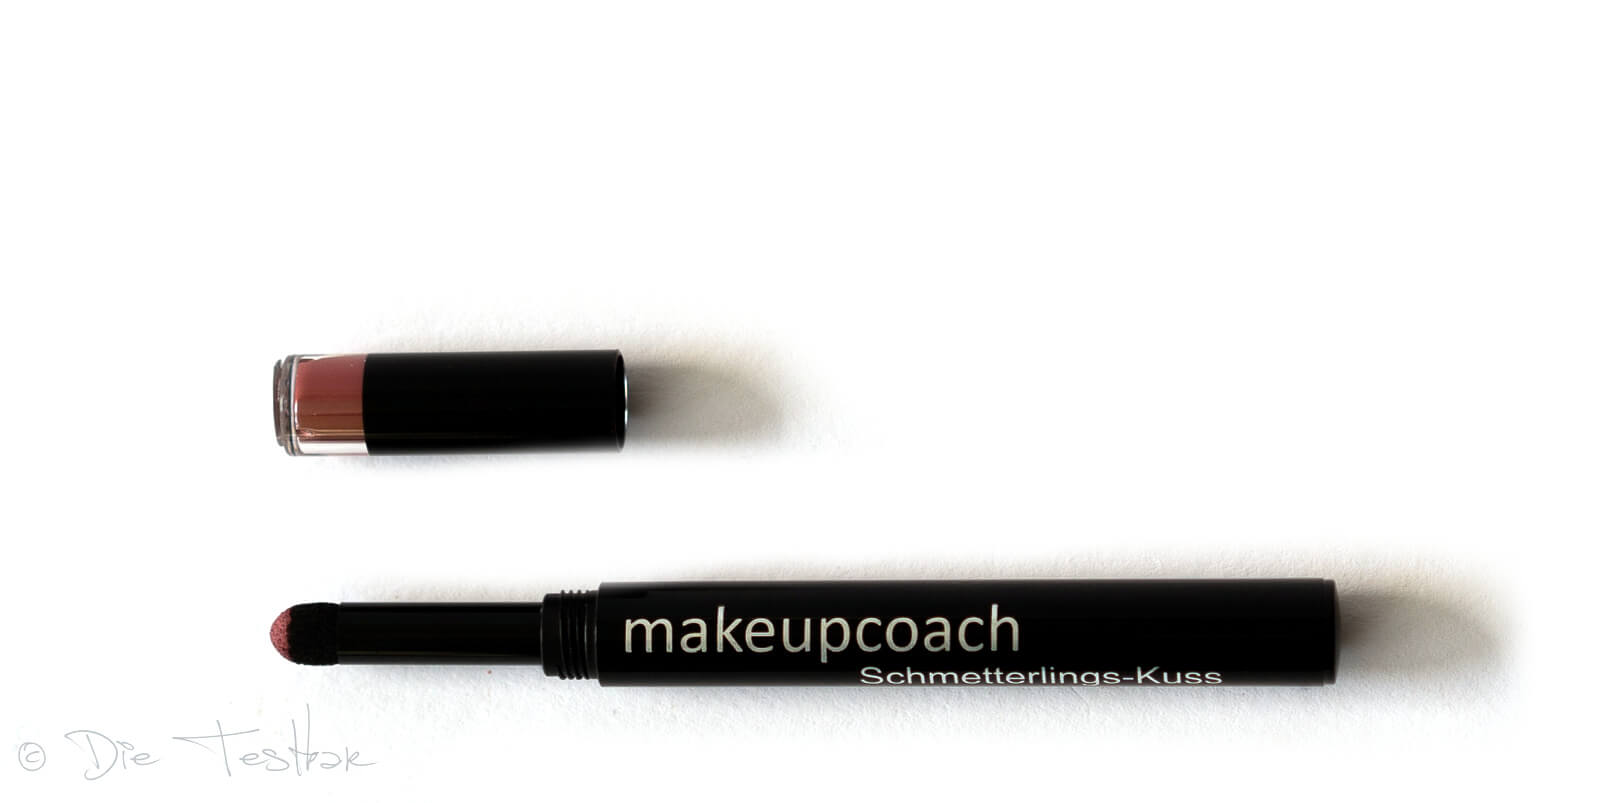 Für wunderschöne Lippen - Hochwertiges Lippen-Make-up vom makeupcoach 17